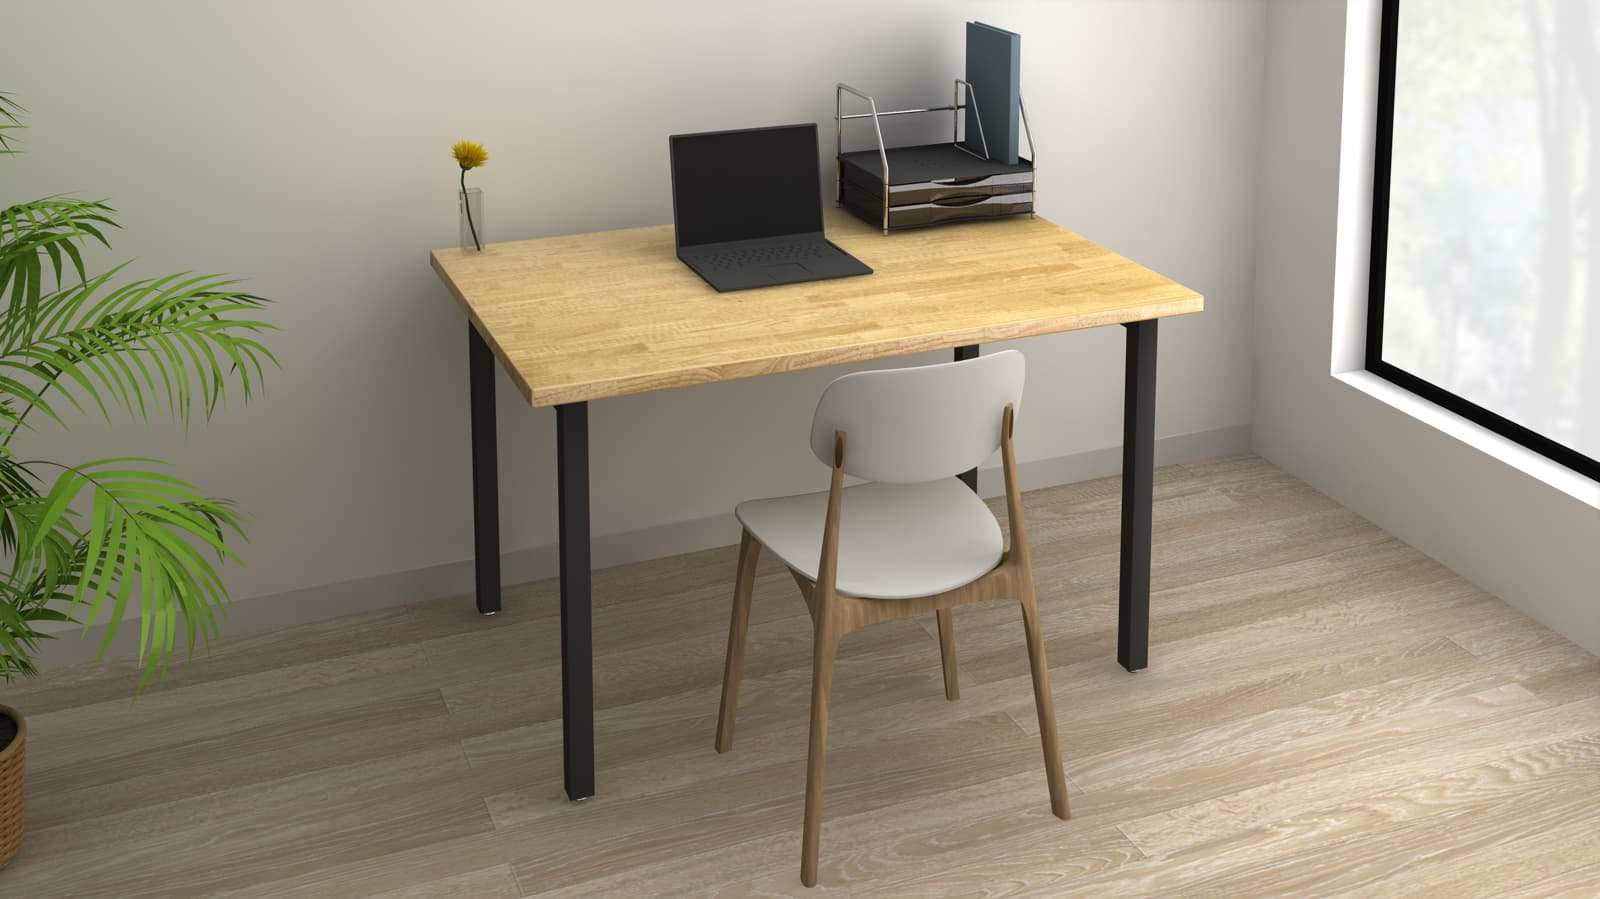 テーブルの前に椅子が一脚と、テーブル上にレターケースとノートパソコンが置いてある